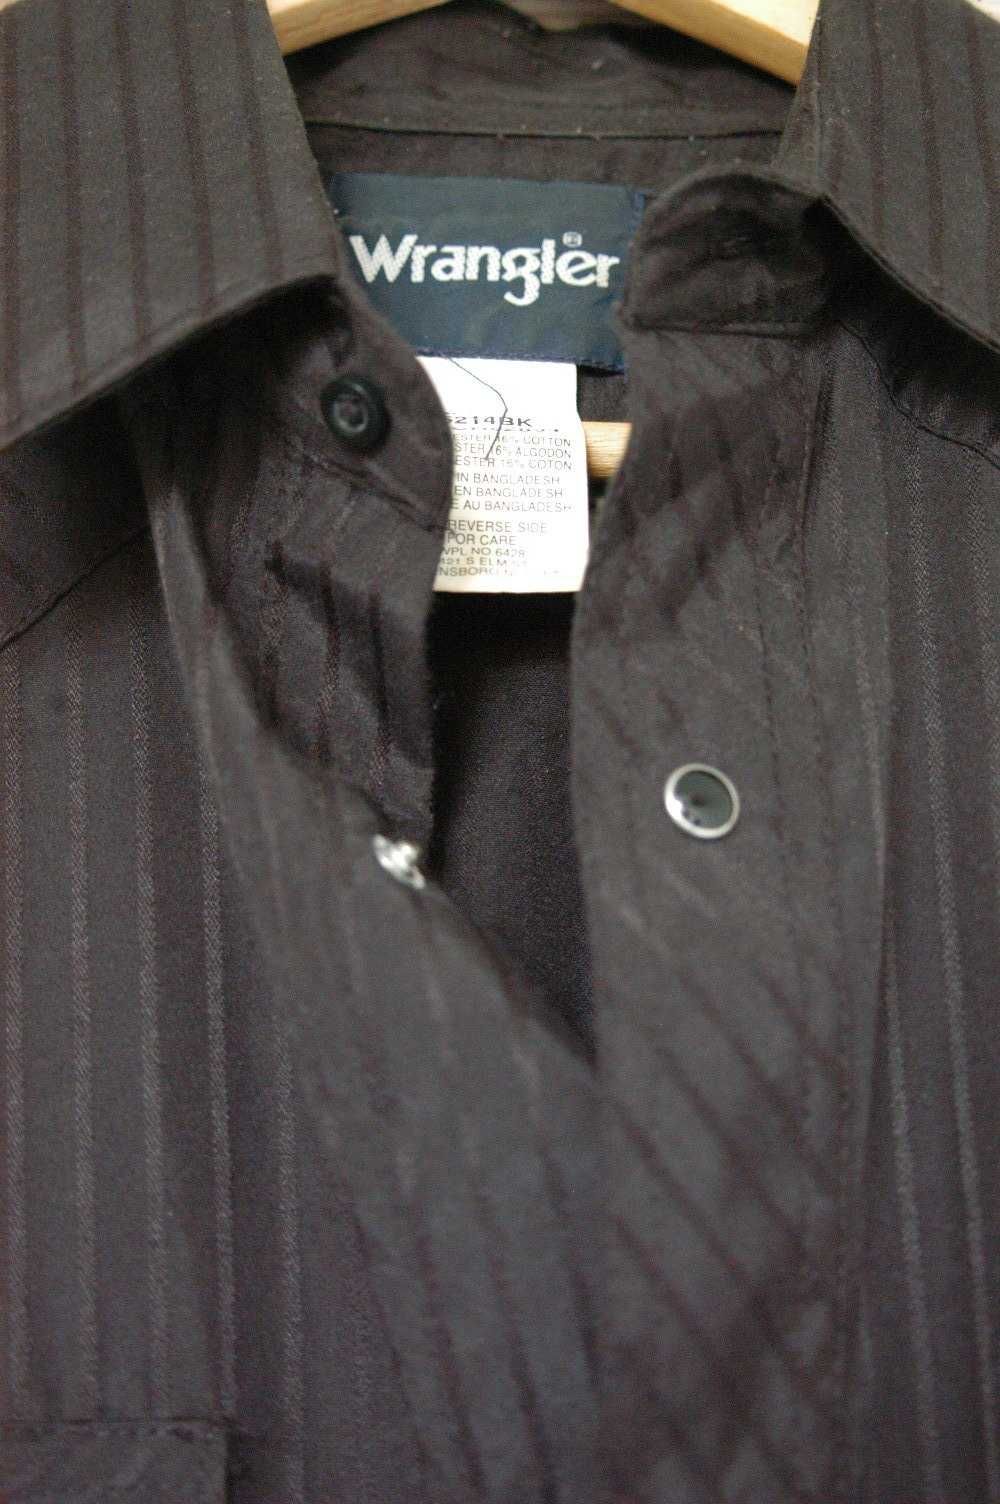 męska czarna koszula Wrangler - rozmiar M - kowbojska - westernowa